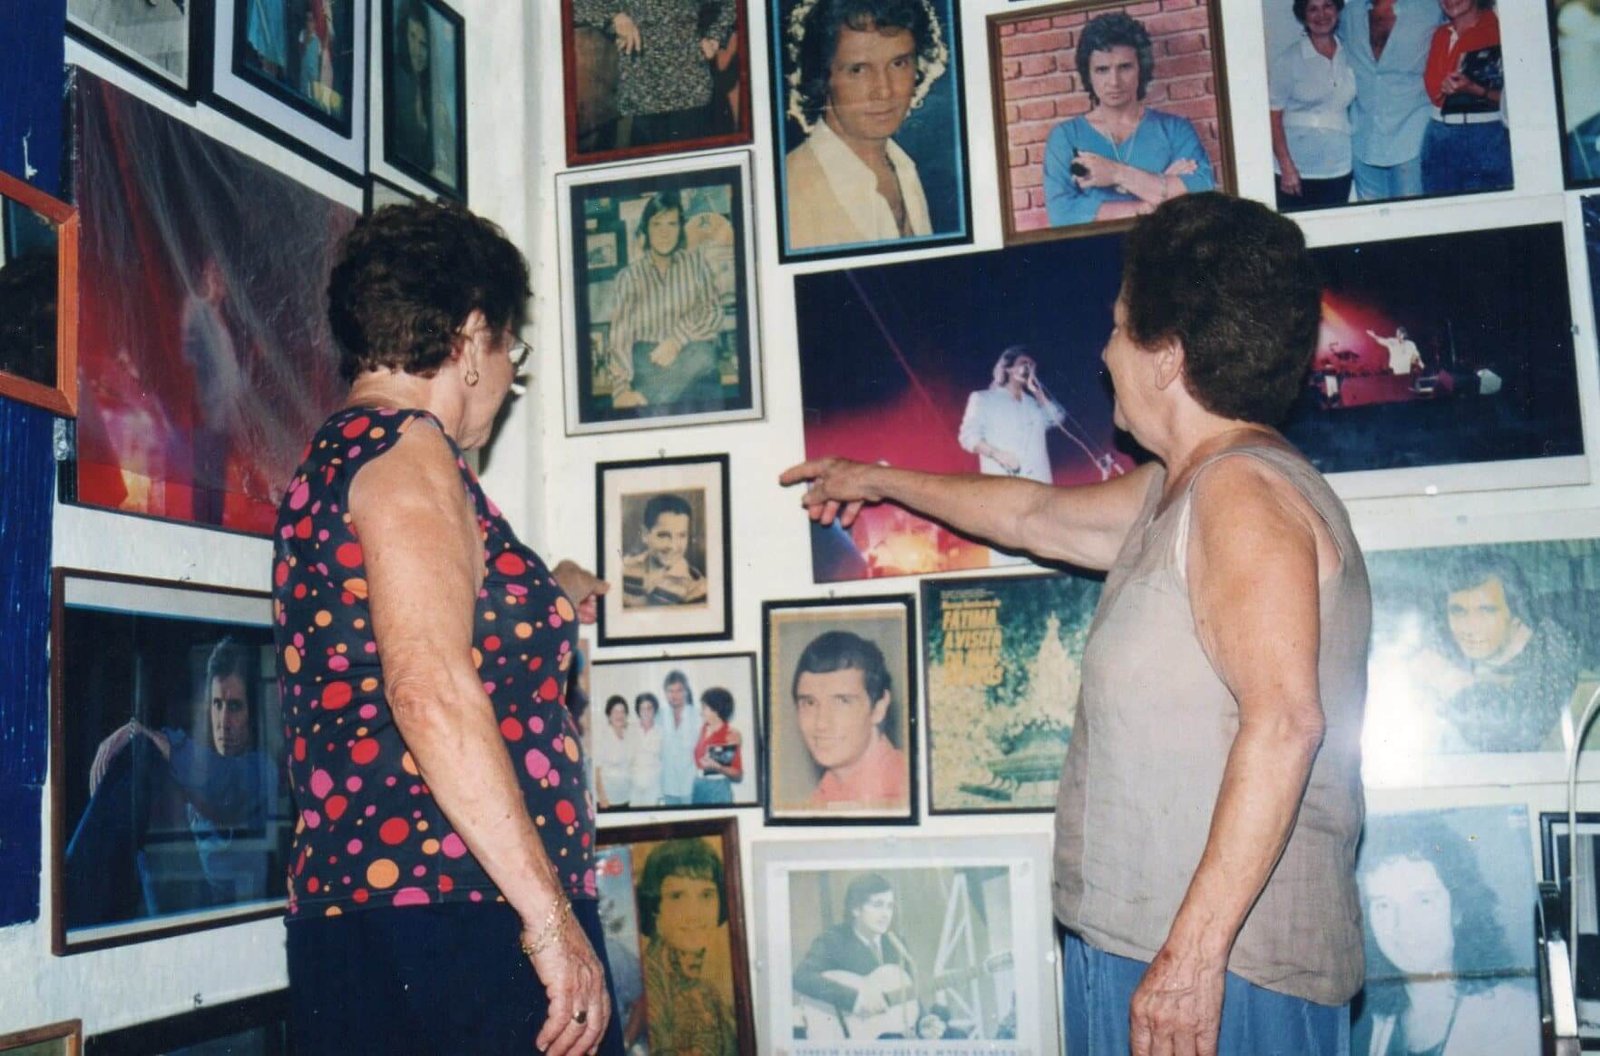 As imagens mostram Gercy Volpato recebendo visitantes em seu acervo.